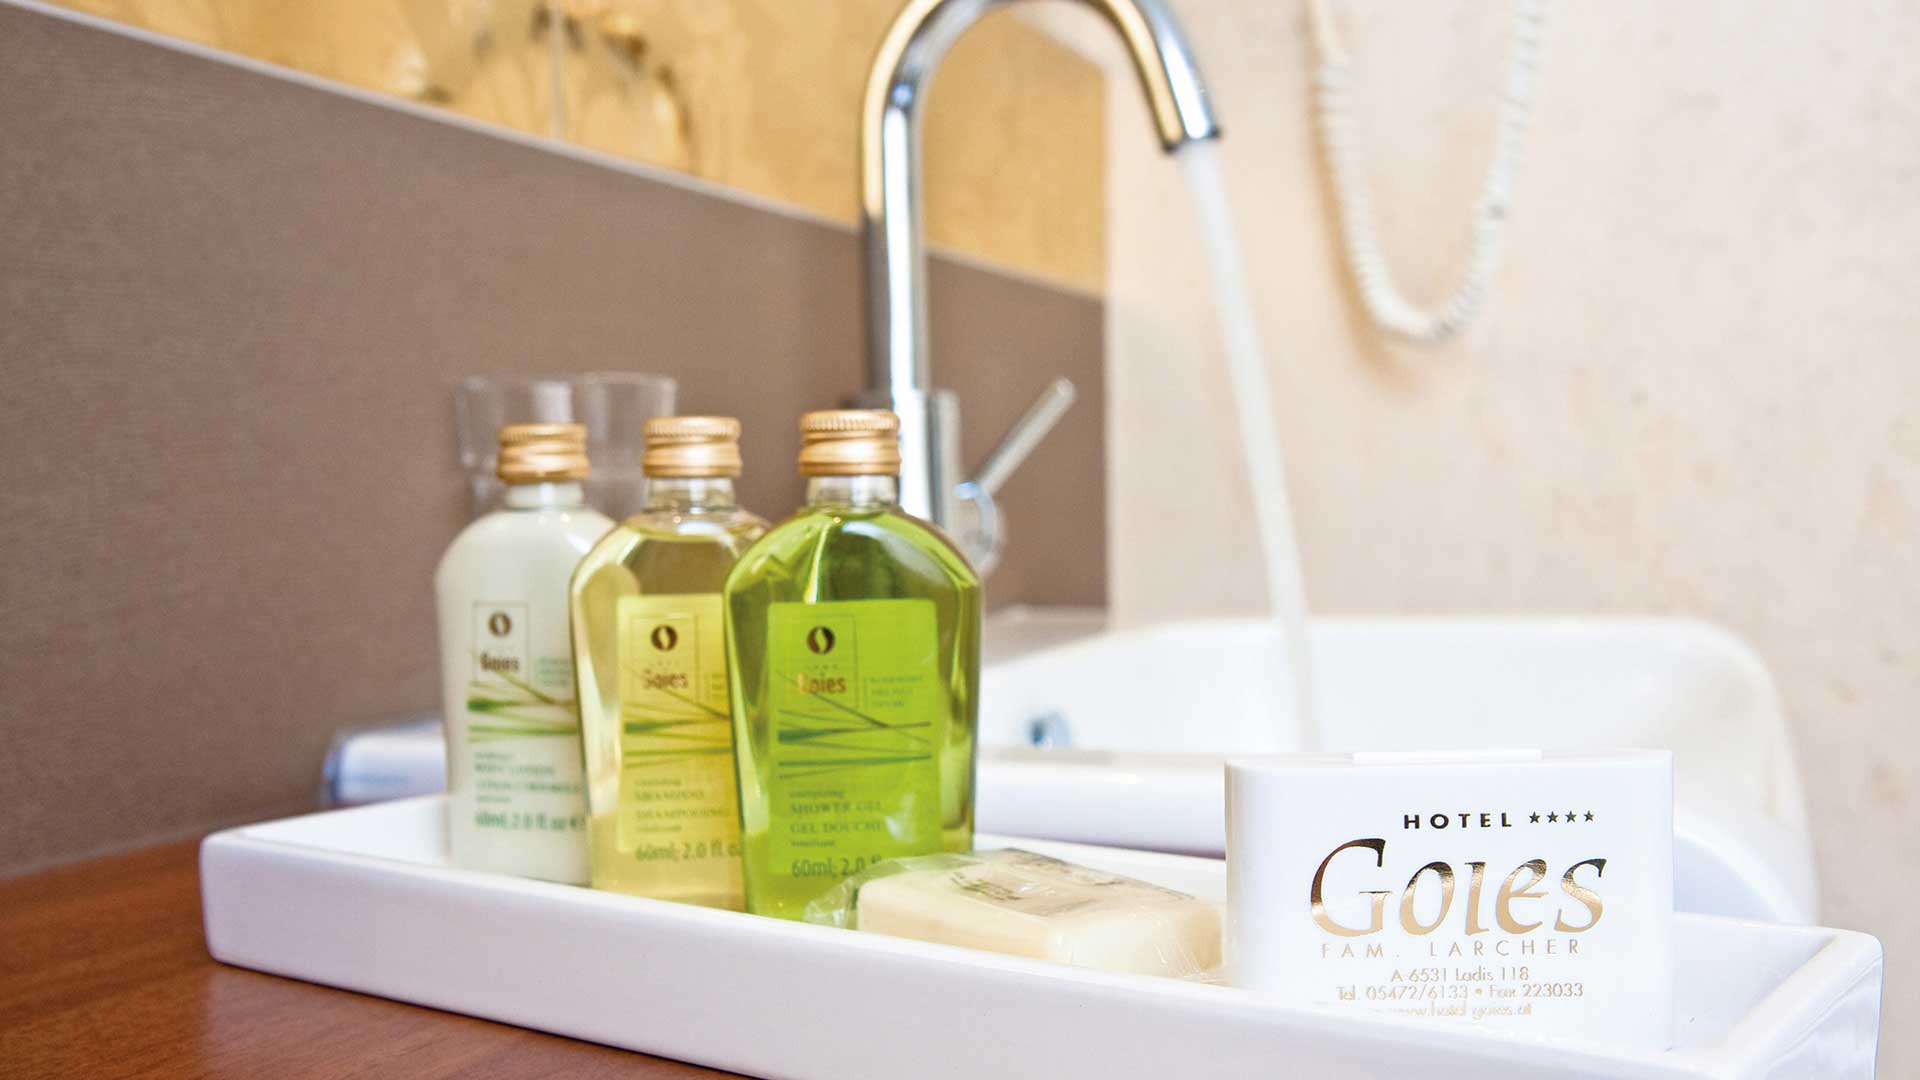 Seife, Shampoo und Duschgel auf den Zimmern des Hotels Goies